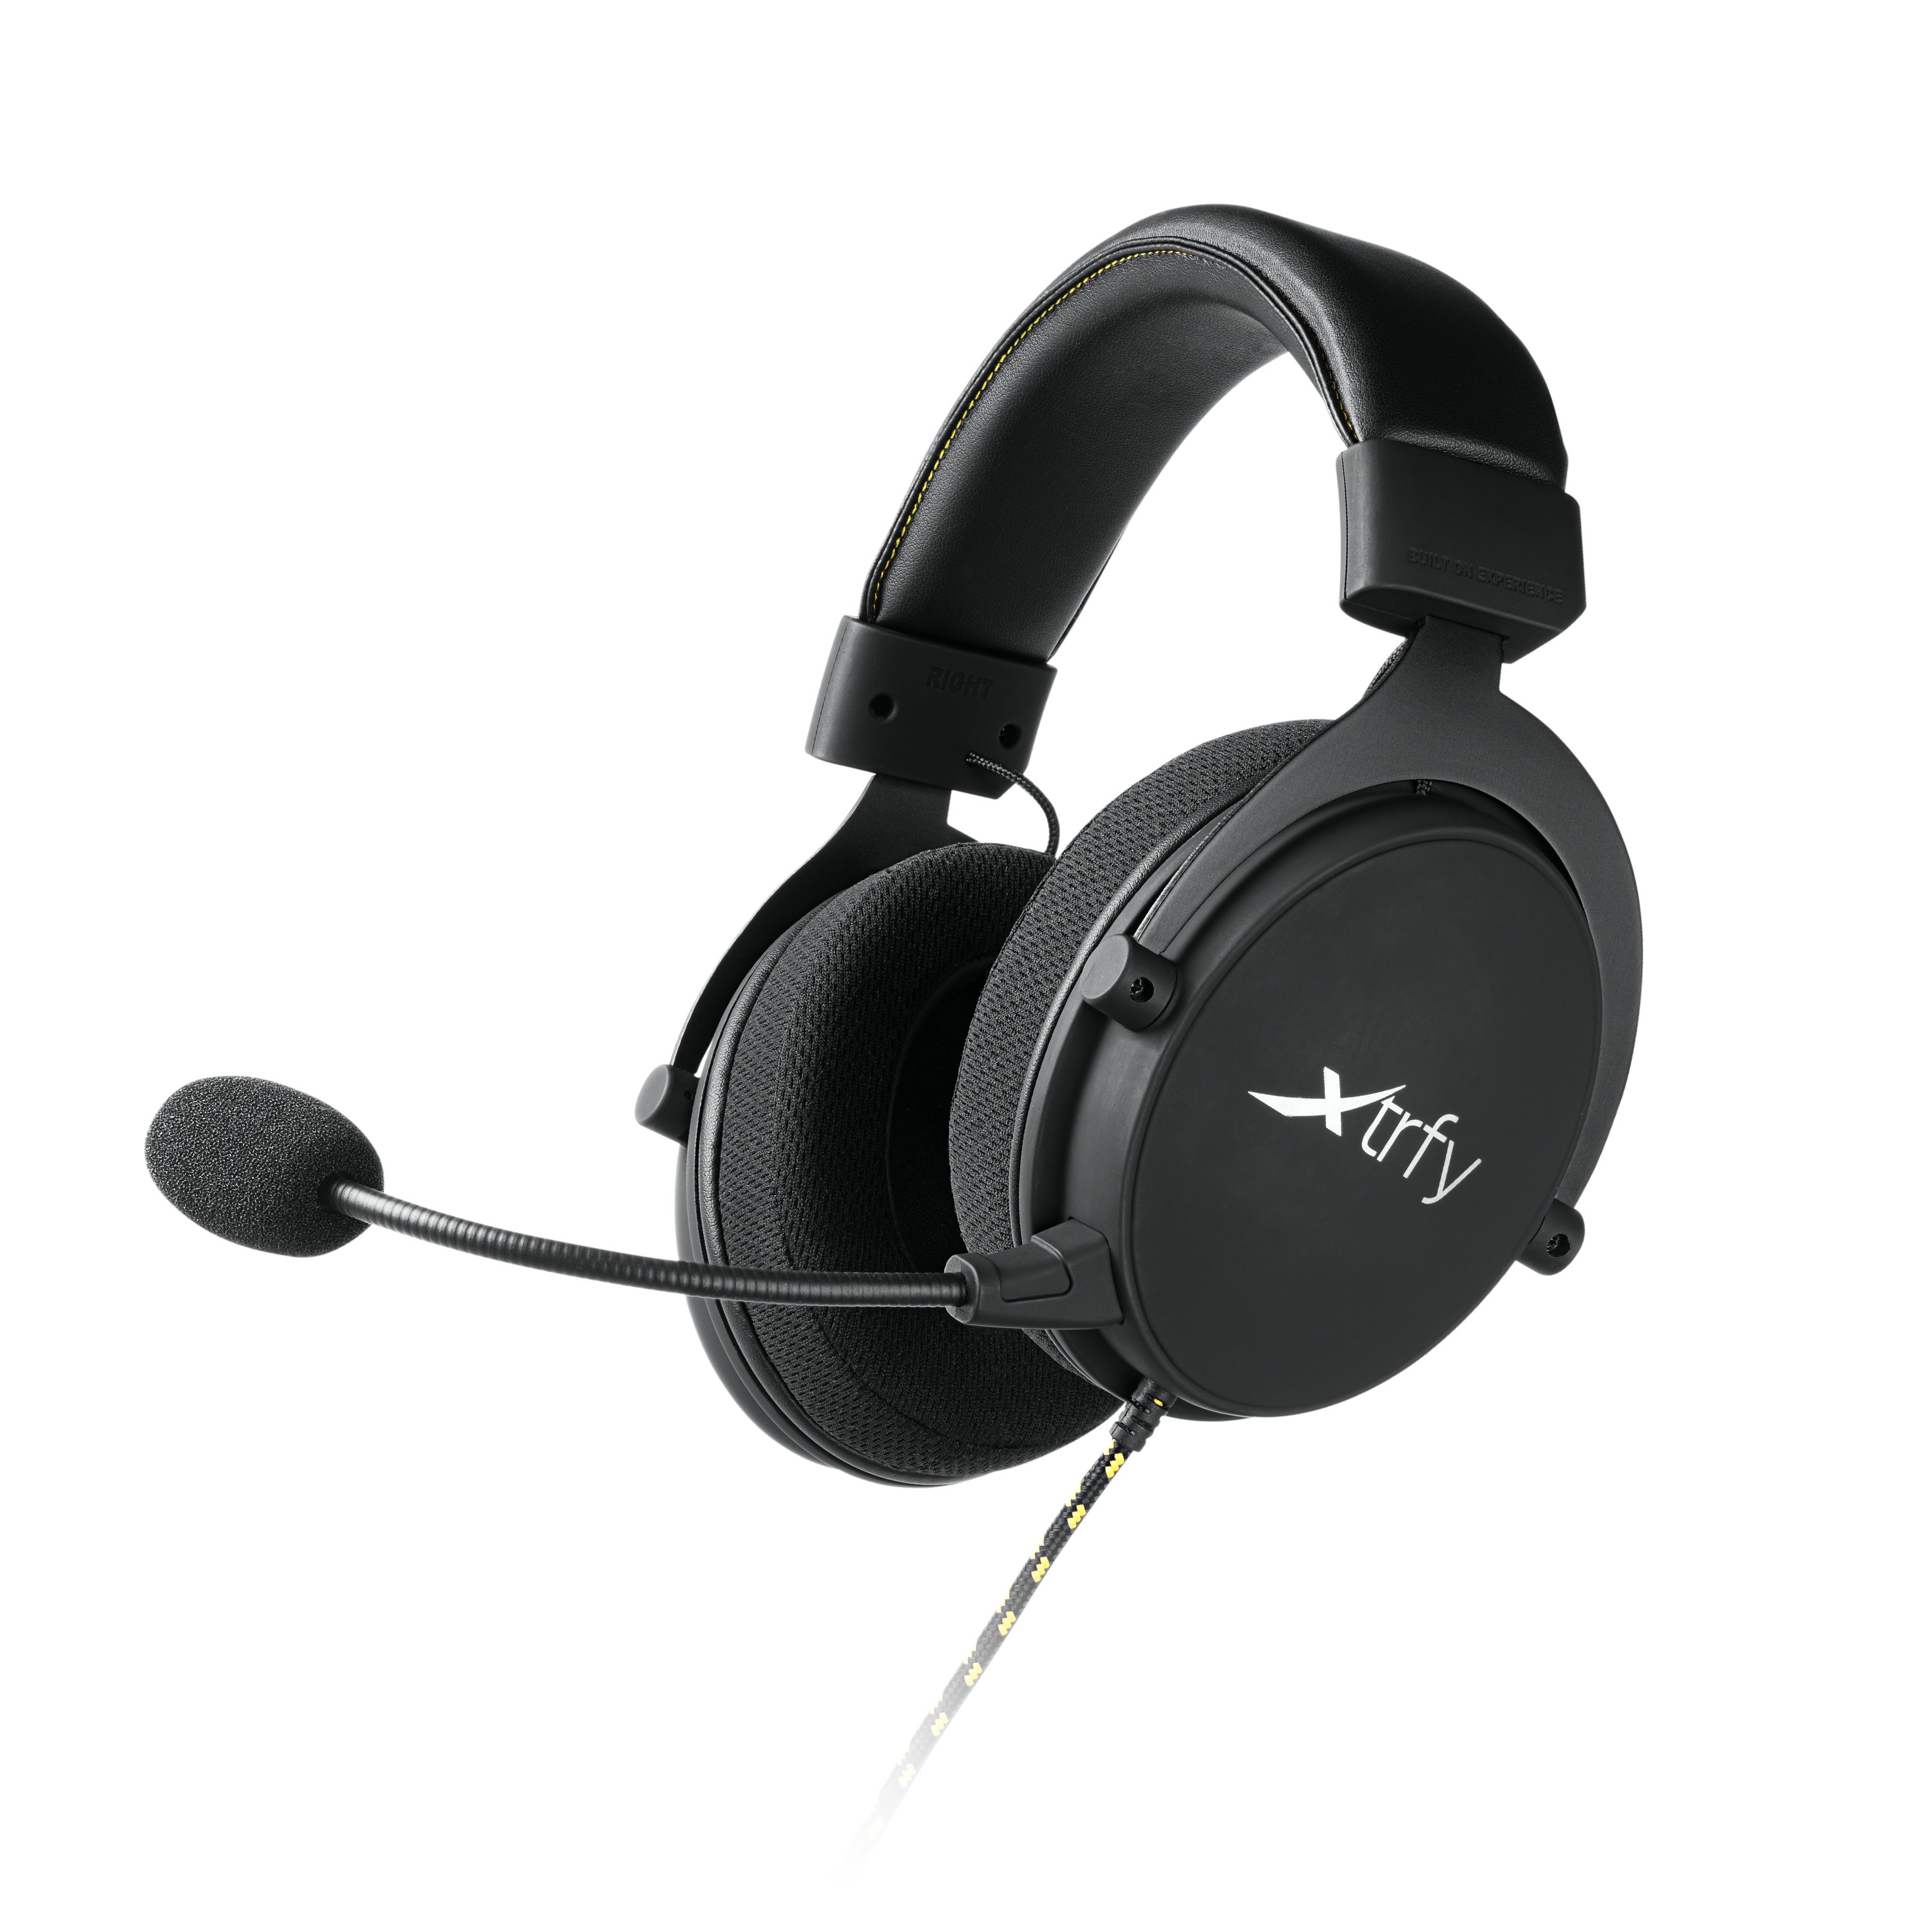 wesentlichen Gaming-Headset Audiodetails (Mikrofon Xtrfy die Spiels abnehmbar), des H2 Verbessert Cherry